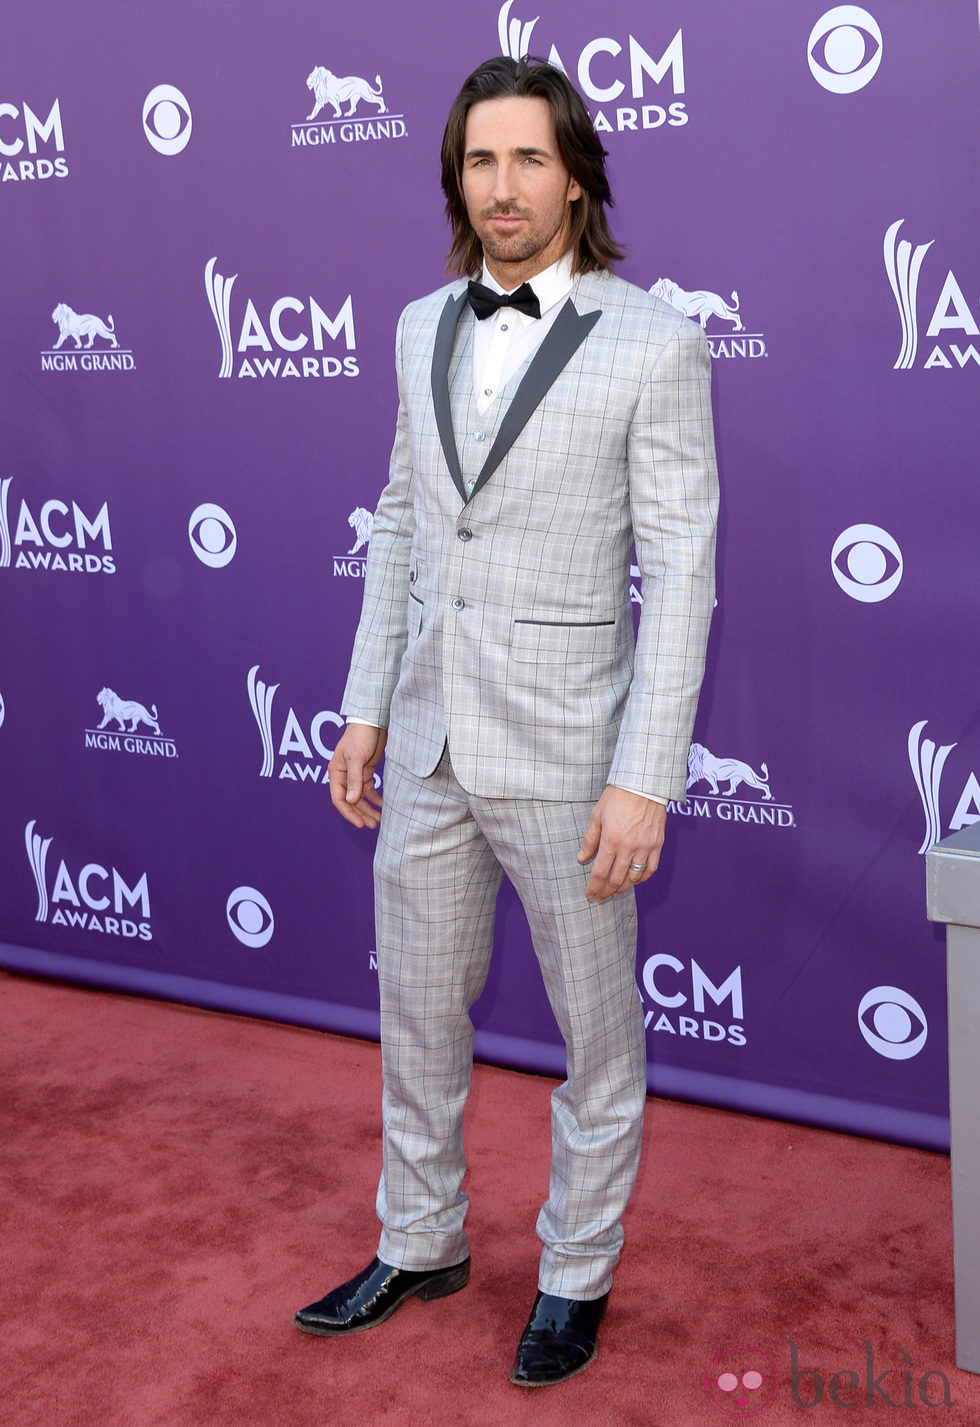 Jake Owen en la alfombra roja de los Premios de Música Country 2013